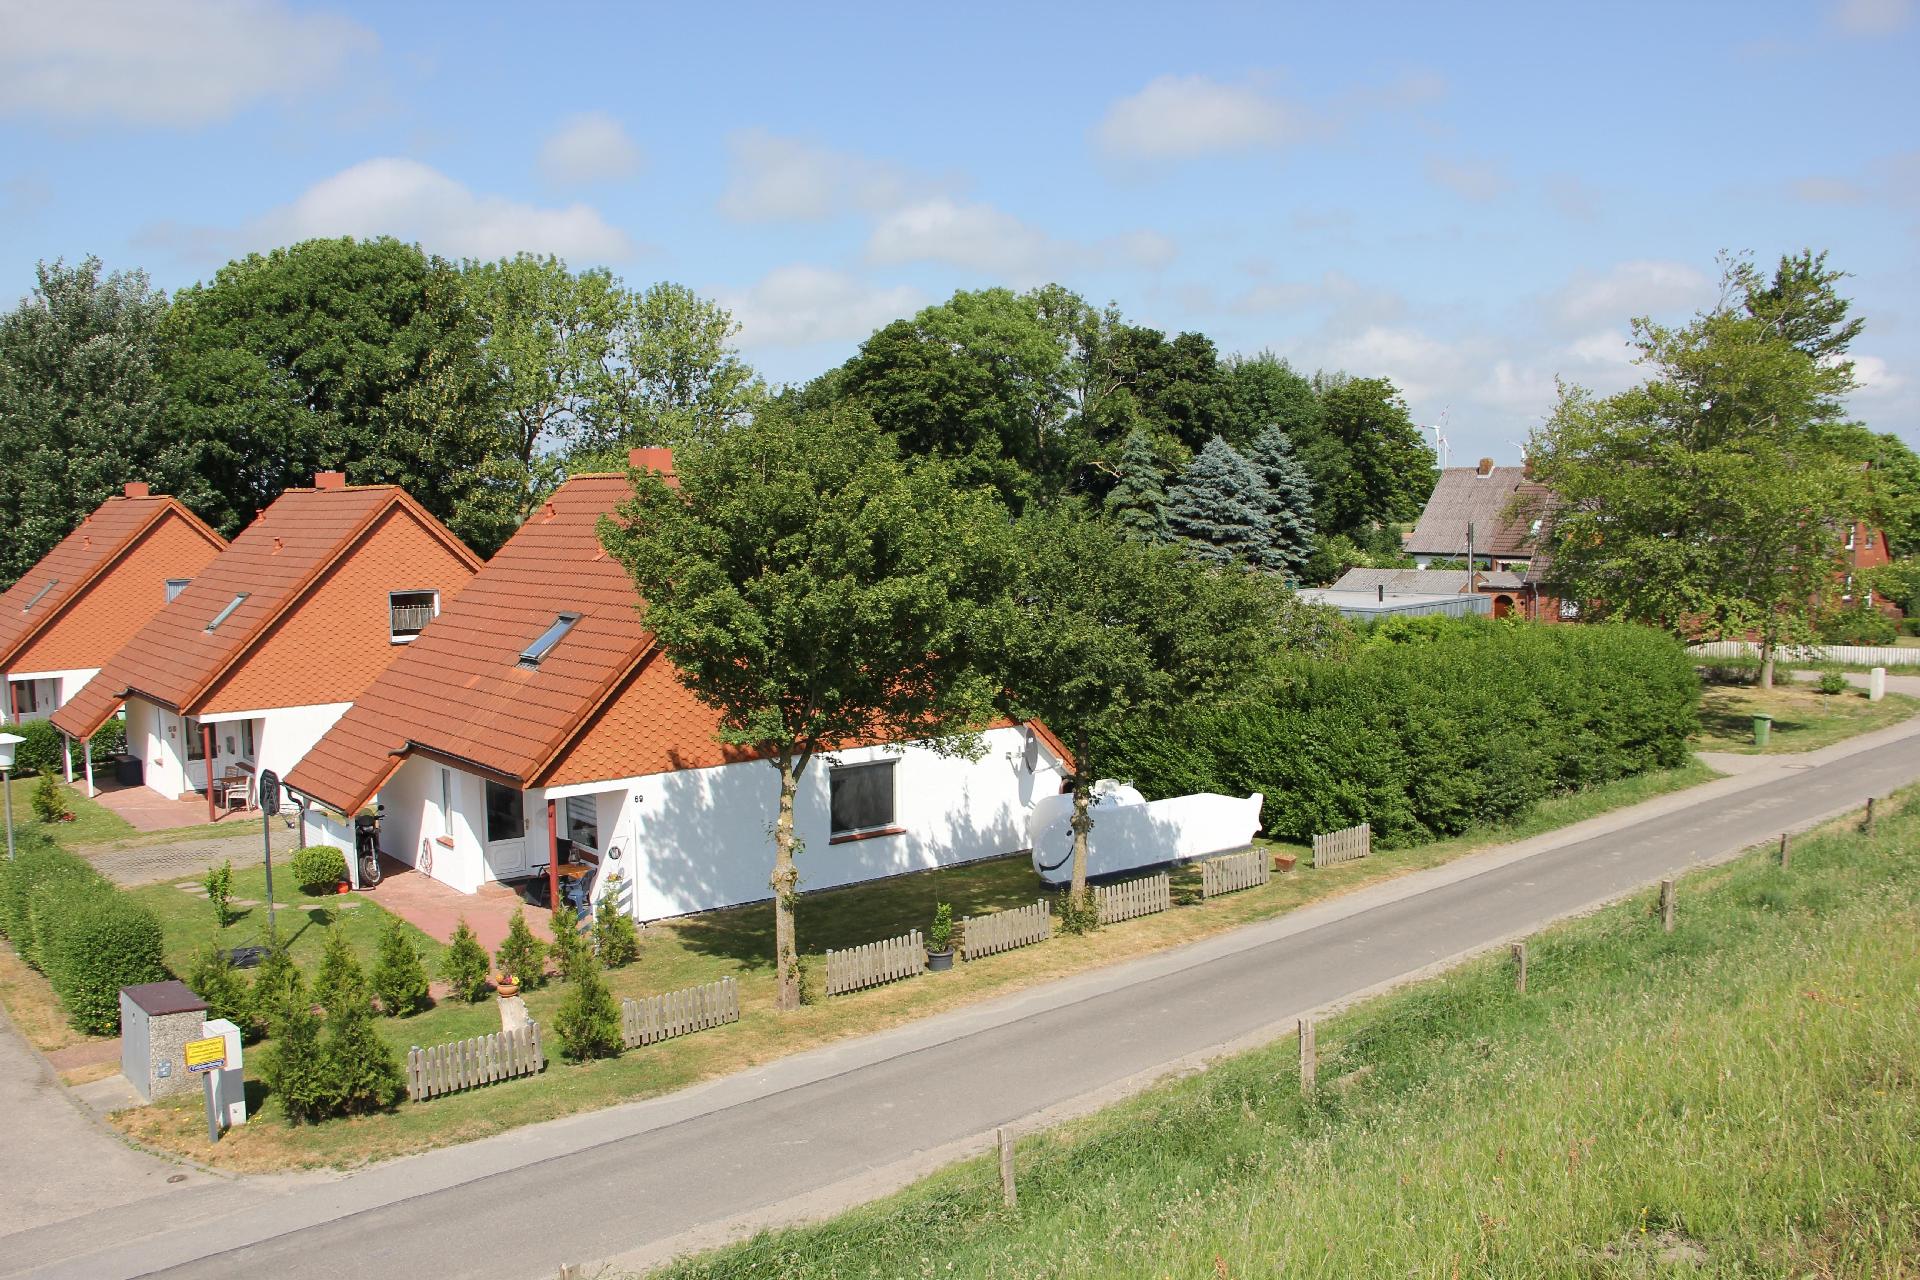 Ferienhaus in Dieksanderkoog mit Terrasse, Garten   in Schleswig Holstein